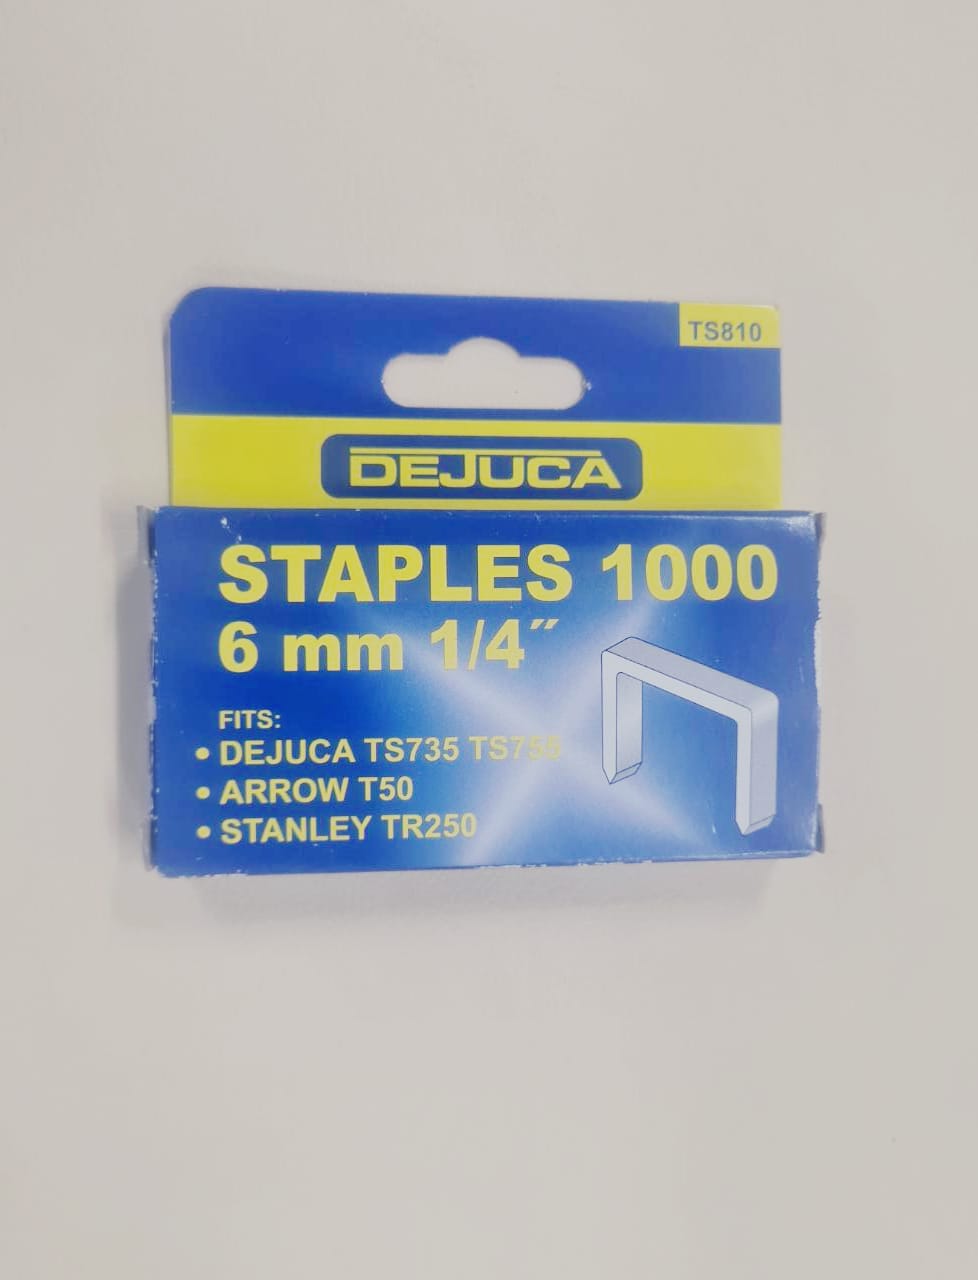 Staples 1000  6mm 1/4" DeJuca TS810 (1000pcs)